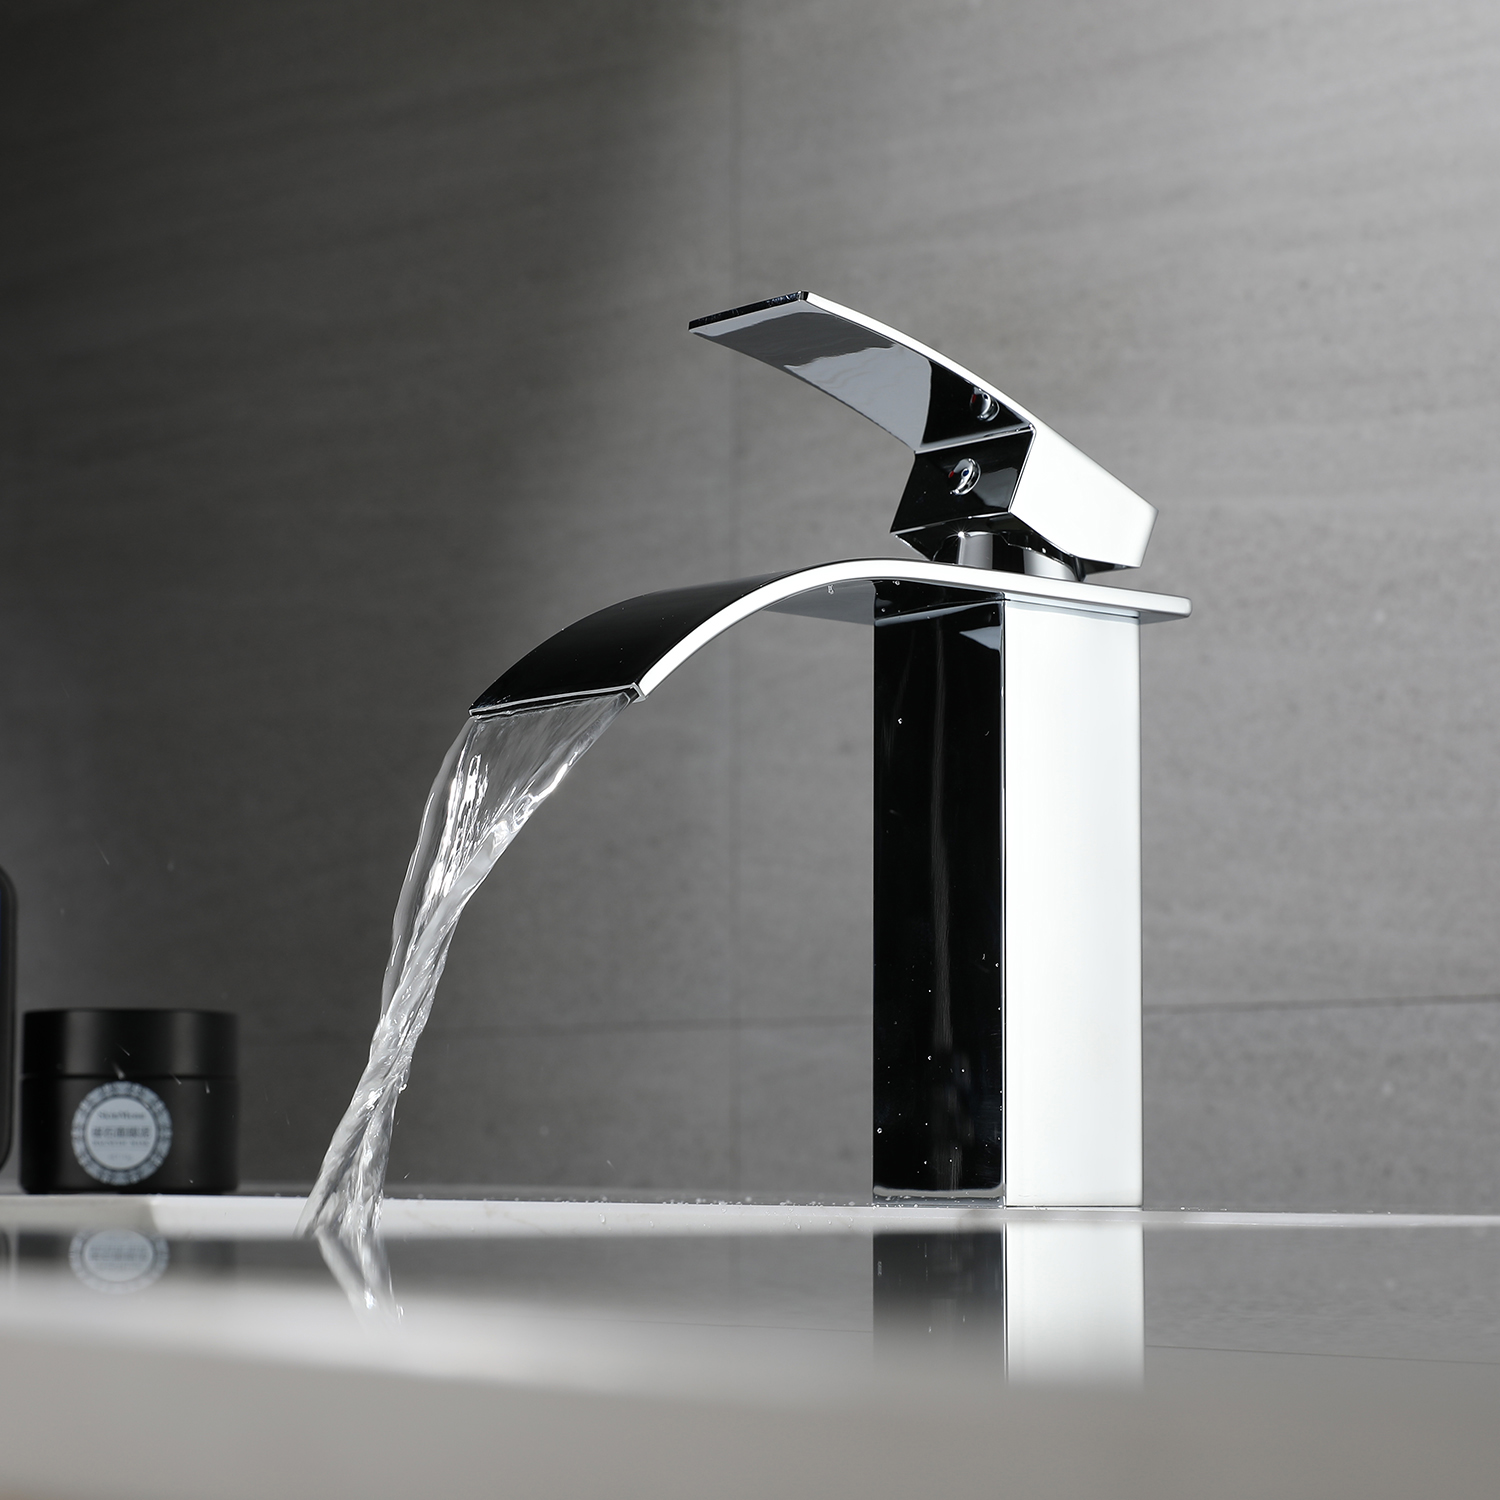 Aquacubic bleifreier Wasserstraßen-Gesundheits-Einhand-Waschtischhahn, Wasserfall-Badezimmerarmaturen